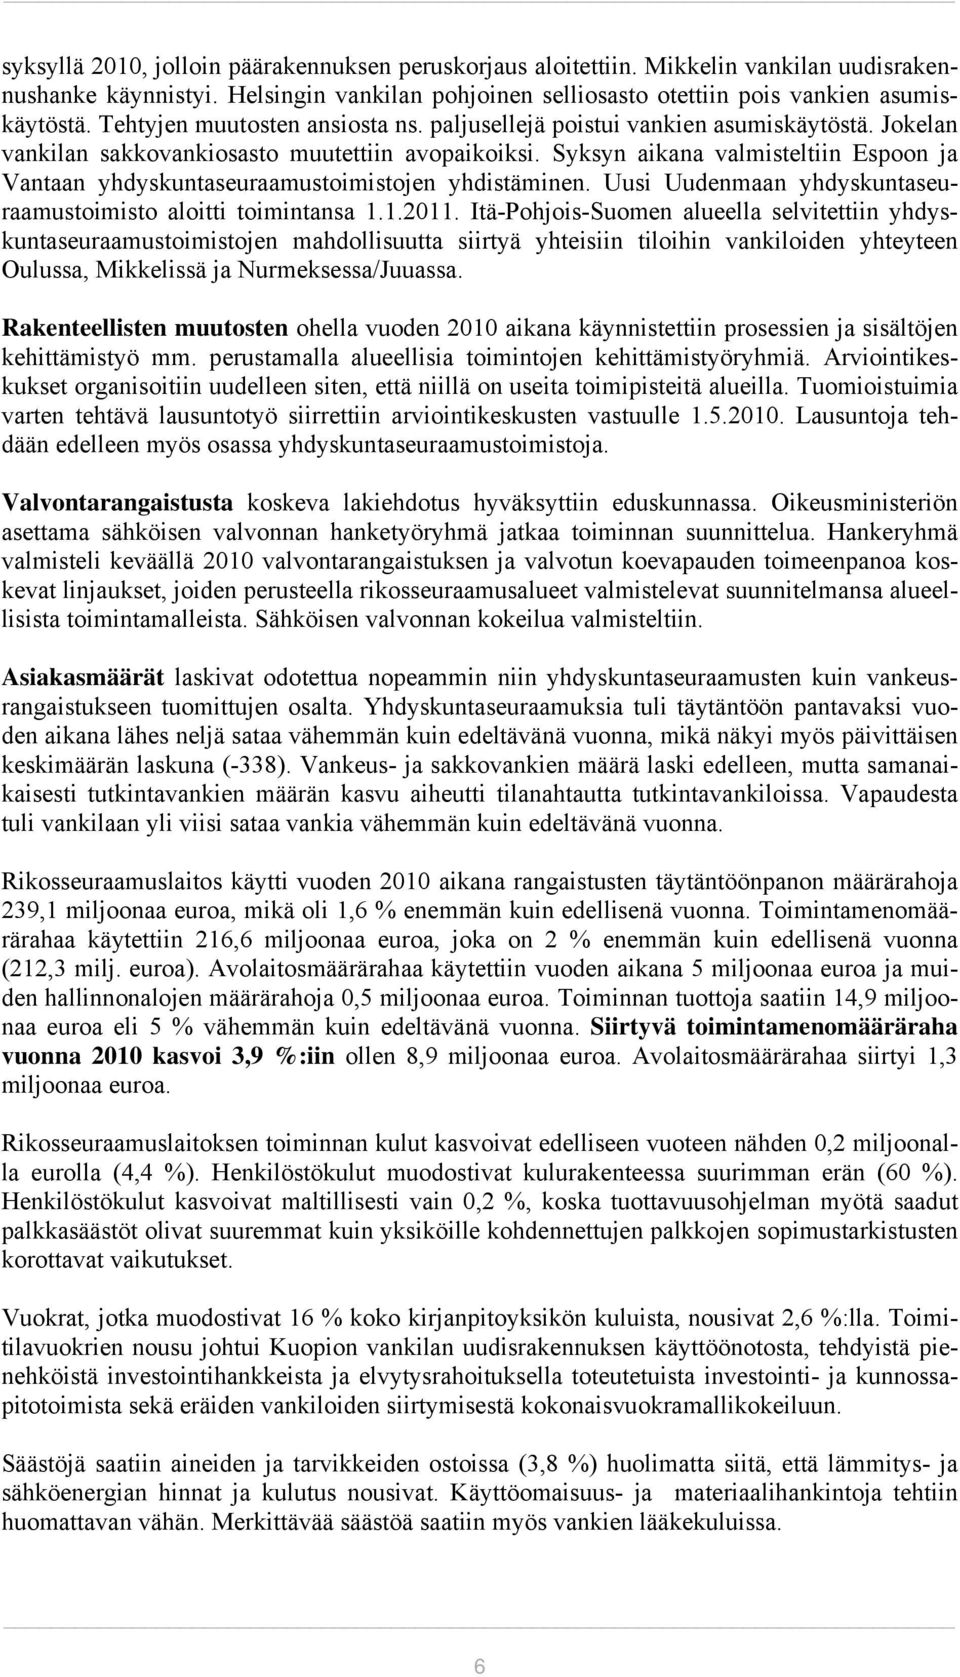 Syksyn aikana valmisteltiin Espoon ja Vantaan yhdyskuntaseuraamustoimistojen yhdistäminen. Uusi Uudenmaan yhdyskuntaseuraamustoimisto aloitti toimintansa 1.1.2011.